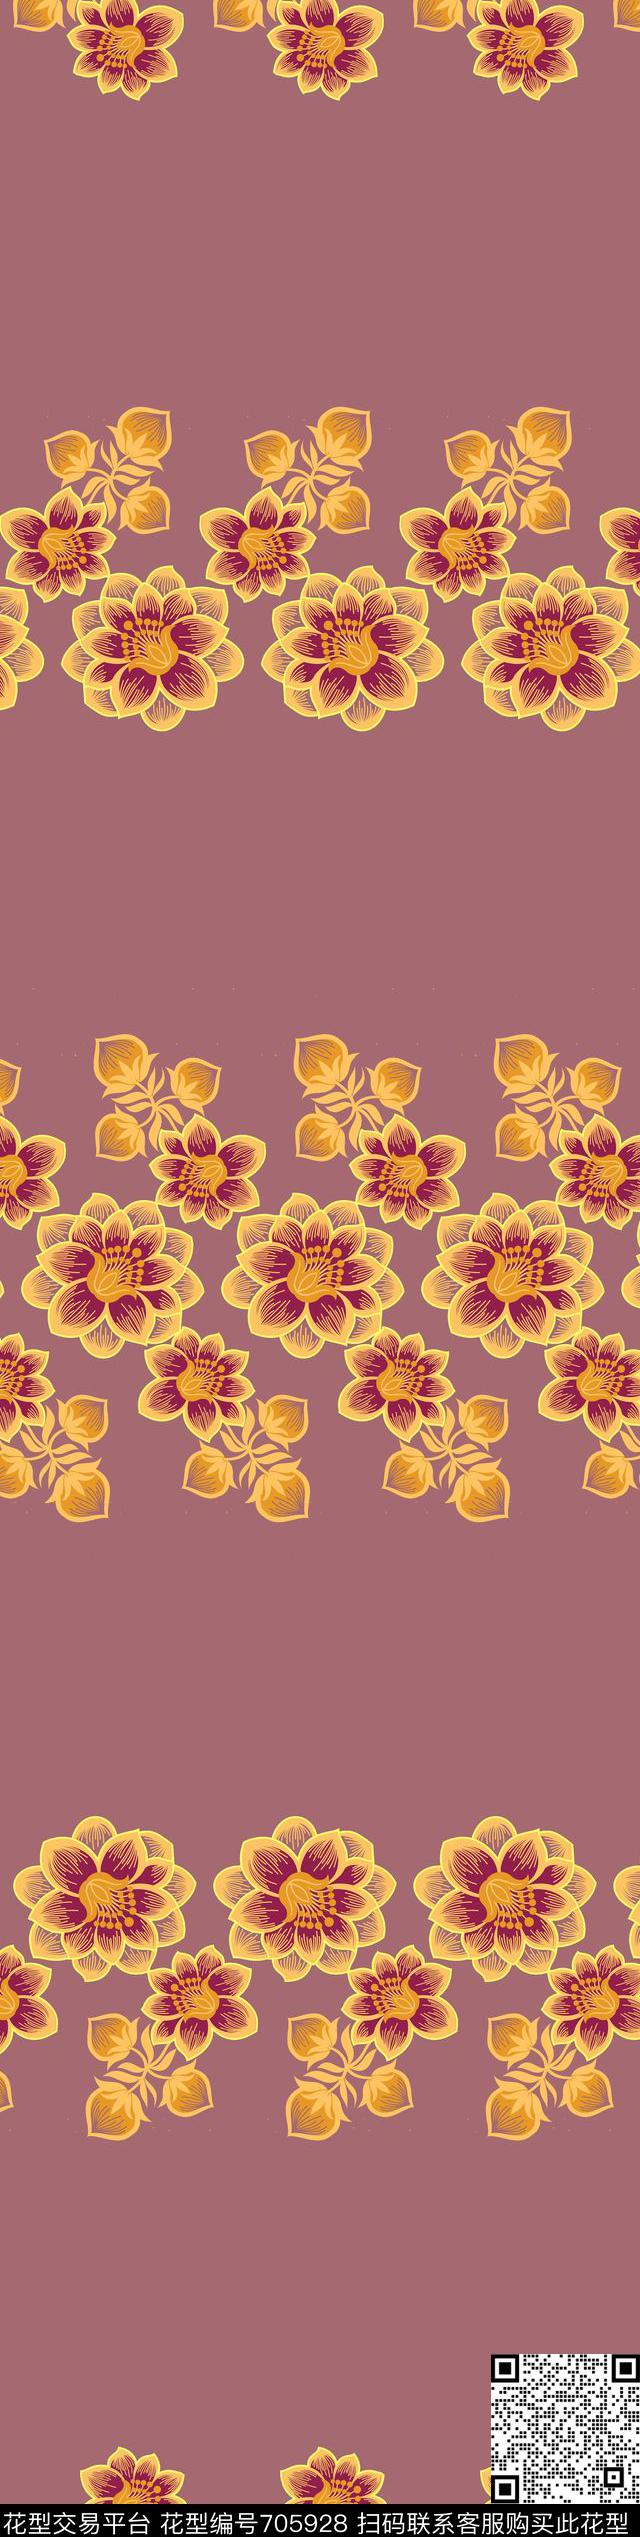 034.jpg - 705928 - 牡丹 玫瑰 荷花 - 传统印花花型 － 窗帘花型设计 － 瓦栏